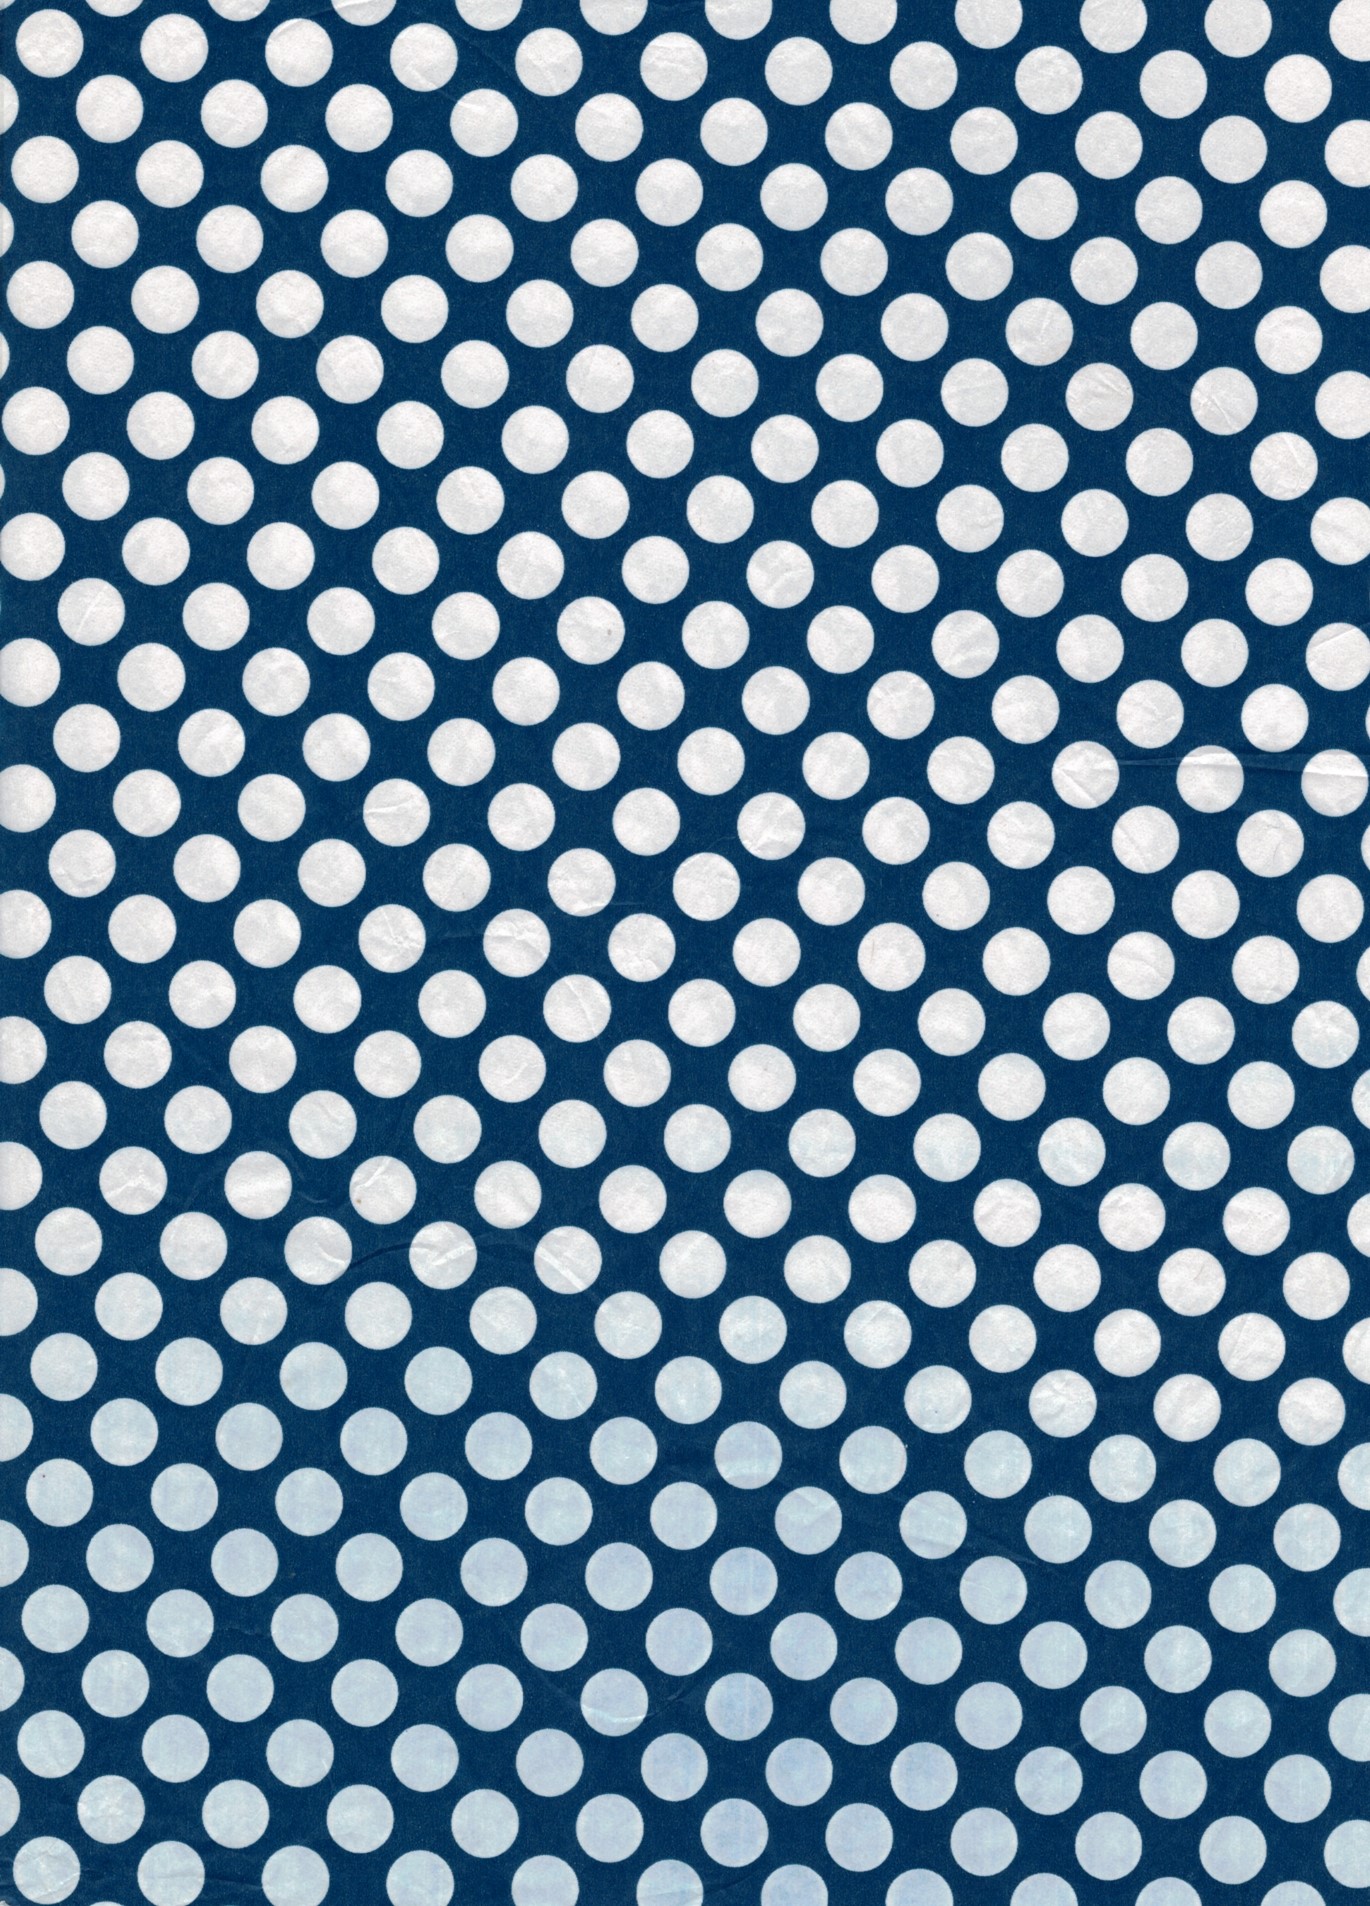 Découpage-Papier, 25x35 cm, 17 g,  weiße Punkte auf blauem Grund, 1 Blatt